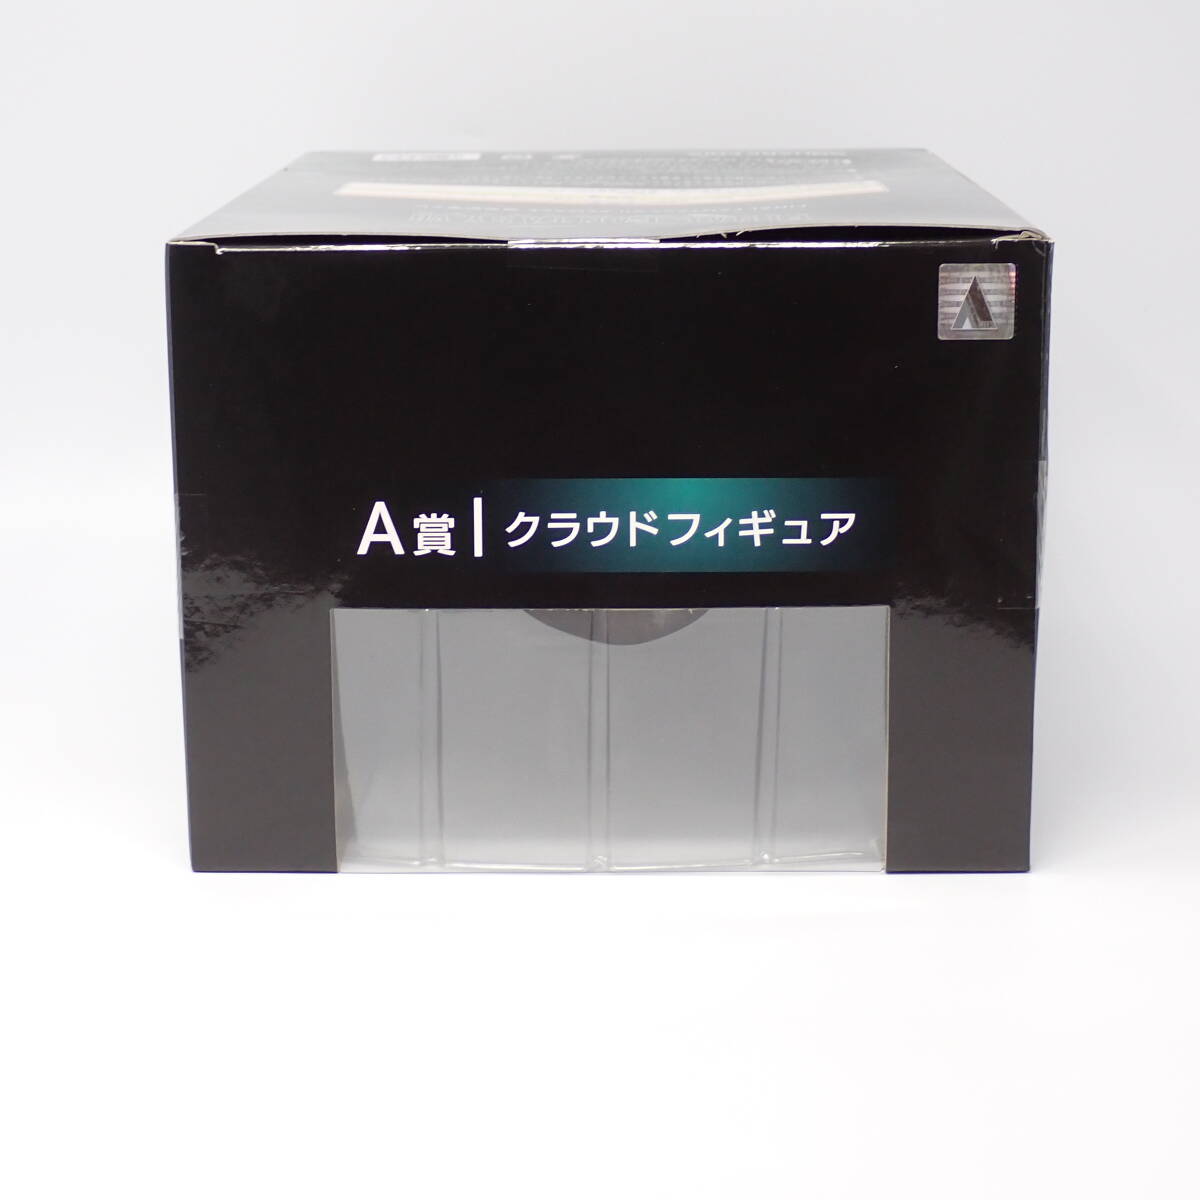  нераспечатанный товар sk одежда * enix A.k громкий Final Fantasy VII переделка продажа память жребий 